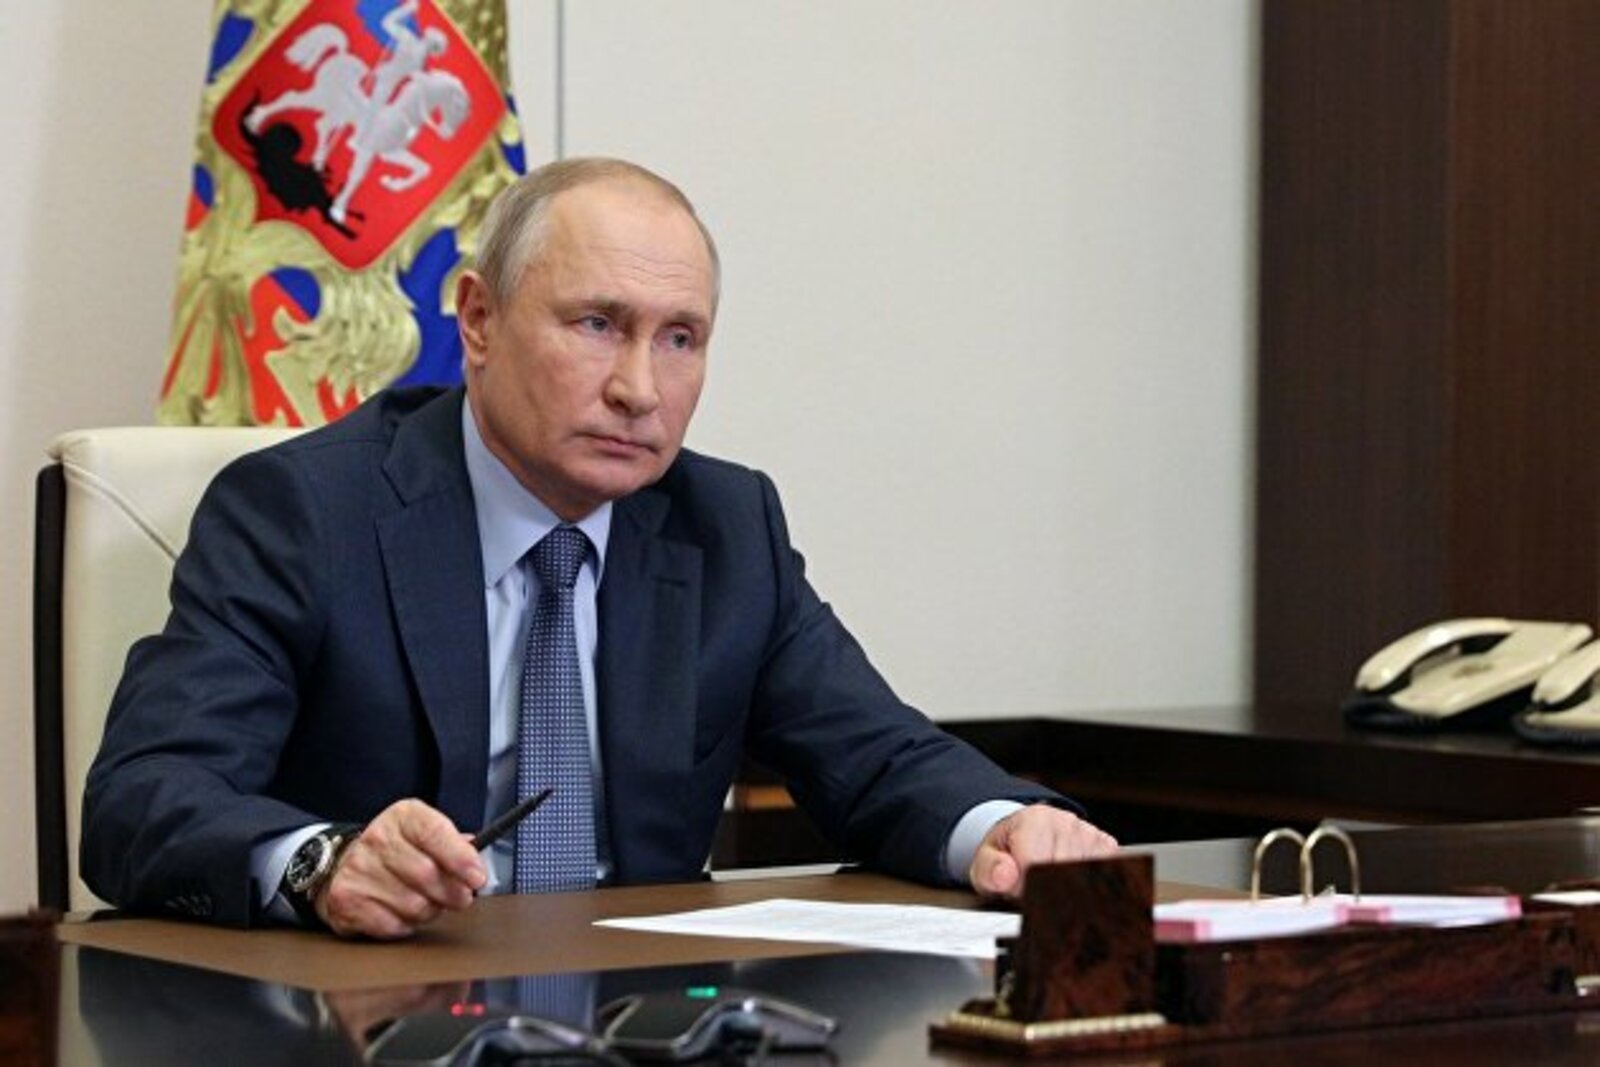 Путин подписал пакет поправок о военной службе